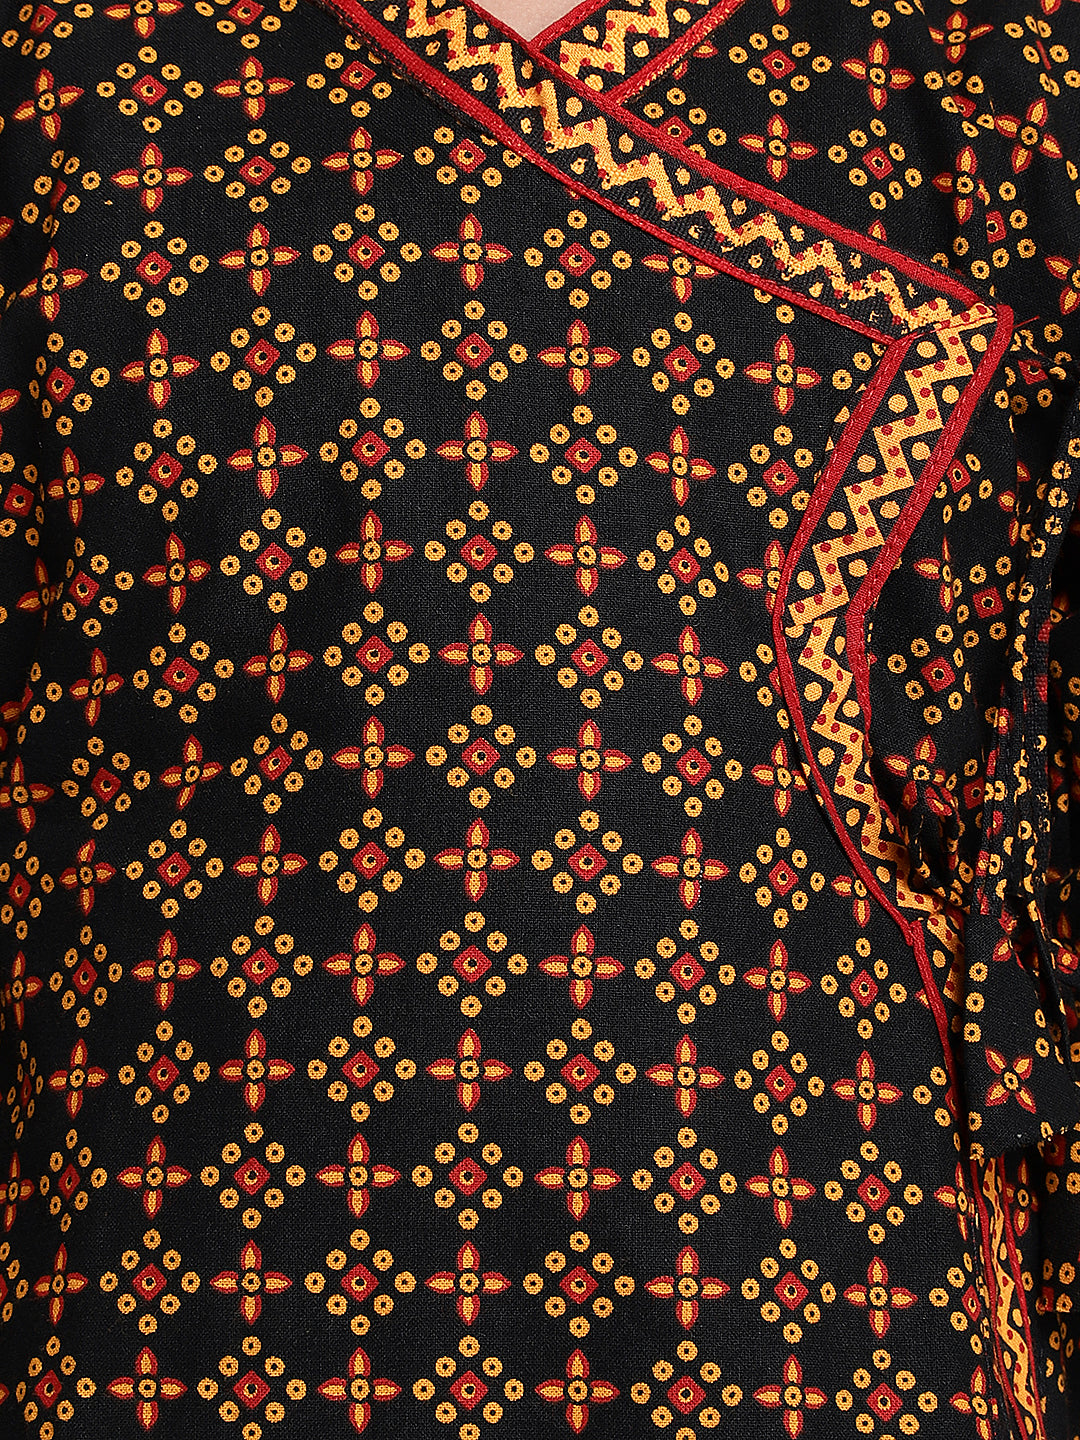 BownBee Full Sleeves Jaipuri Print Kurta With Dhoti - Black & Yellow